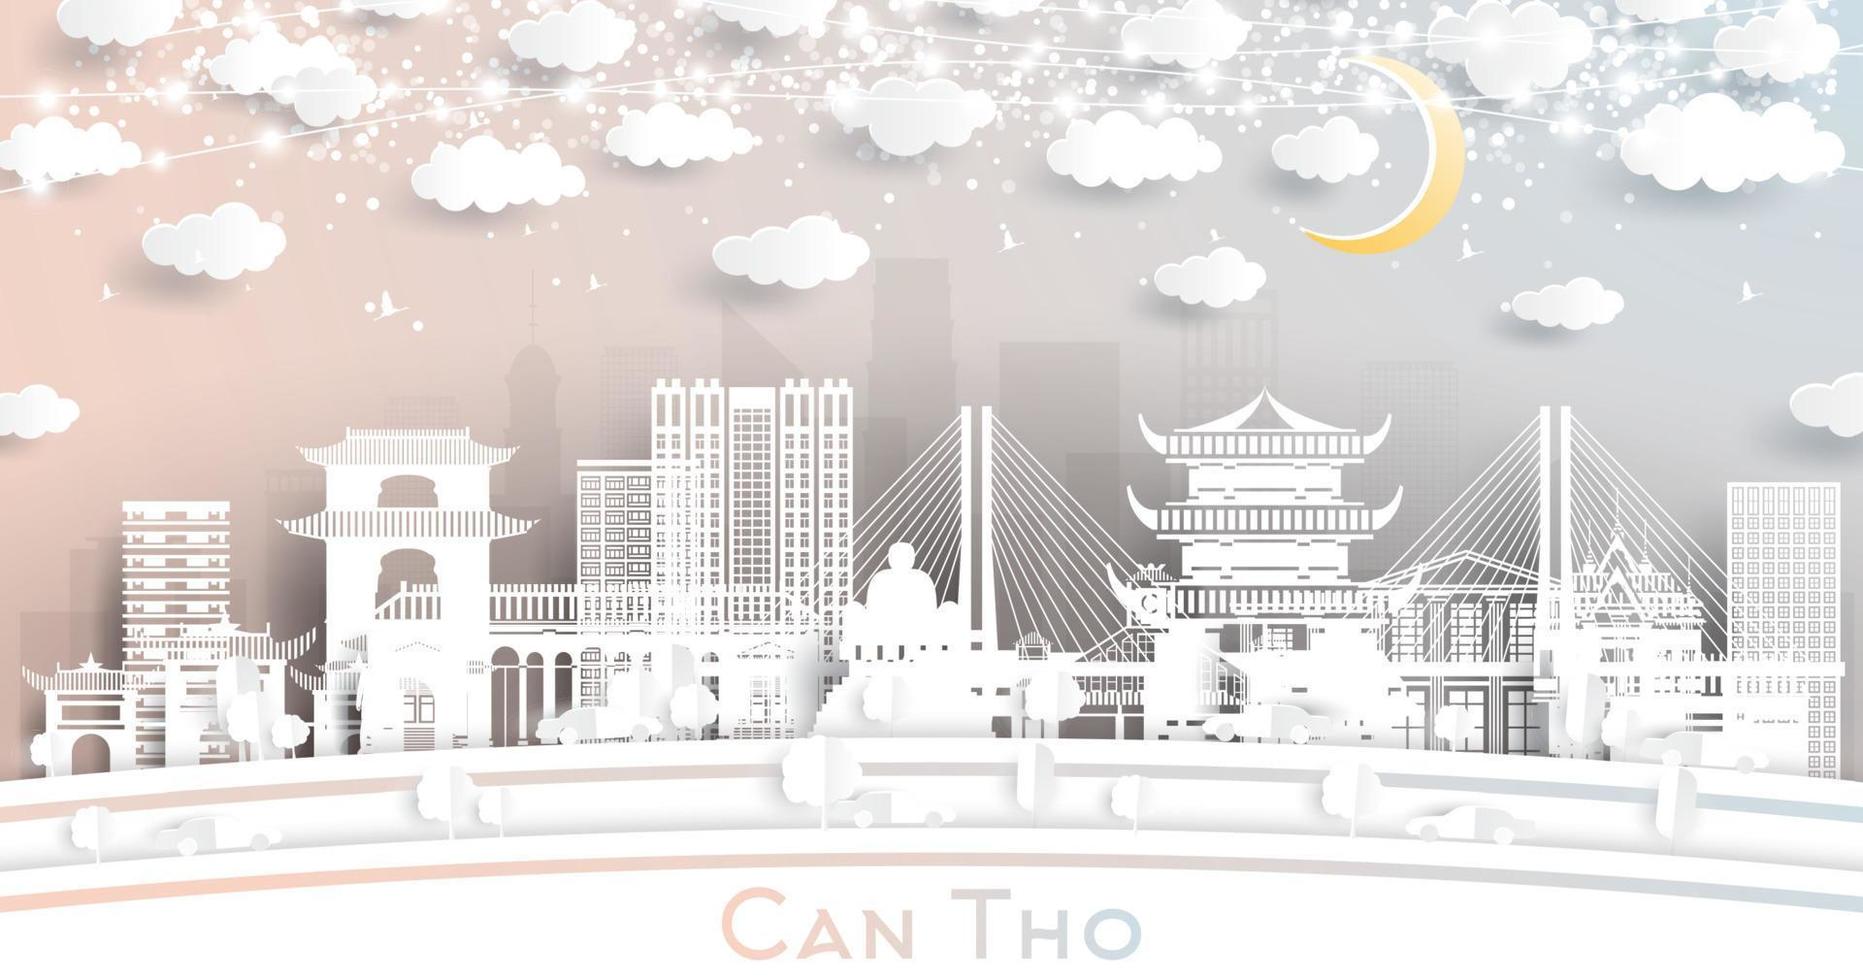 can tho el horizonte de la ciudad de vietnam en estilo de corte de papel con edificios blancos, luna y guirnaldas de neón. vector